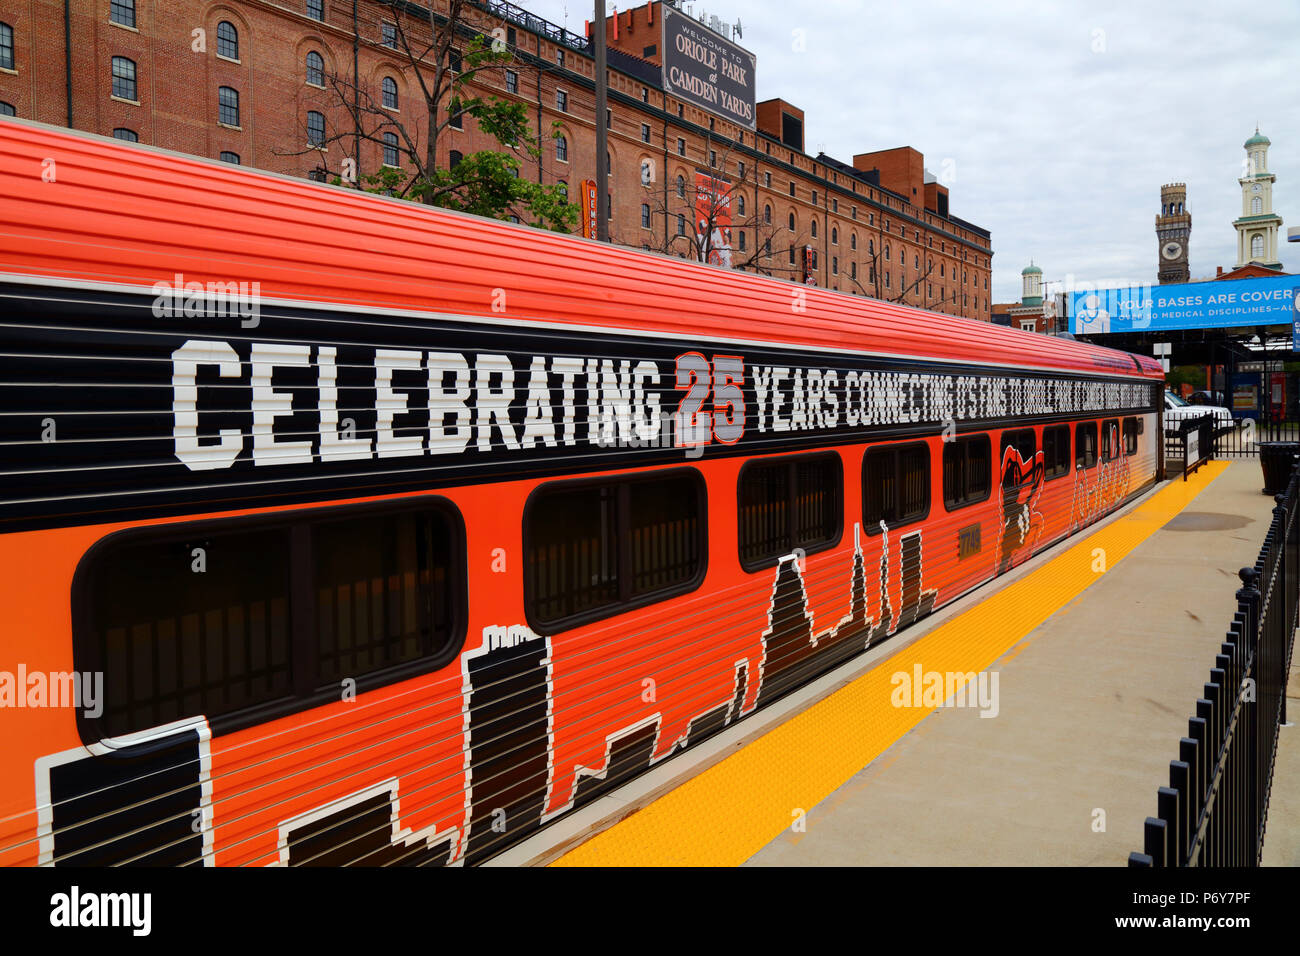 Light Rail coach peint pour célébrer les 25 ans de l'Oriole Park (accueil de l'équipe de baseball des orioles de Baltimore) à Camden Yards, Baltimore, Maryland, USA Banque D'Images